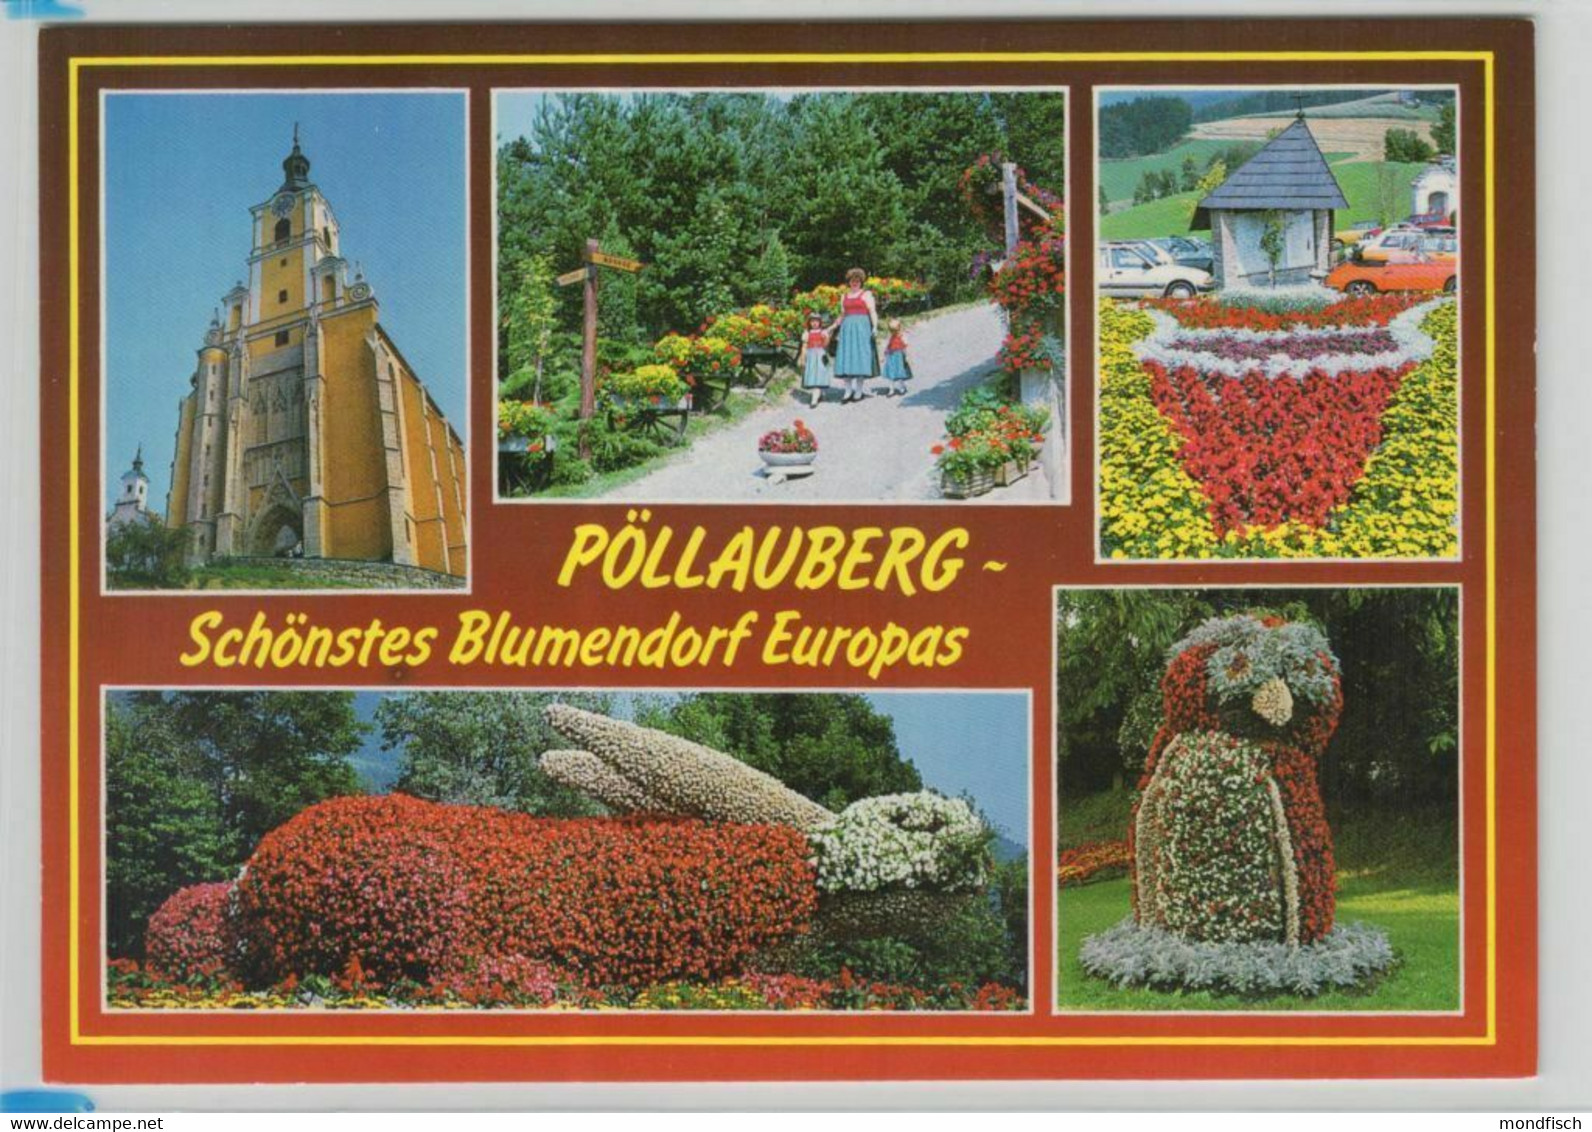 Pöllauberg - Schönstes Blumendorf Europas - Pöllau